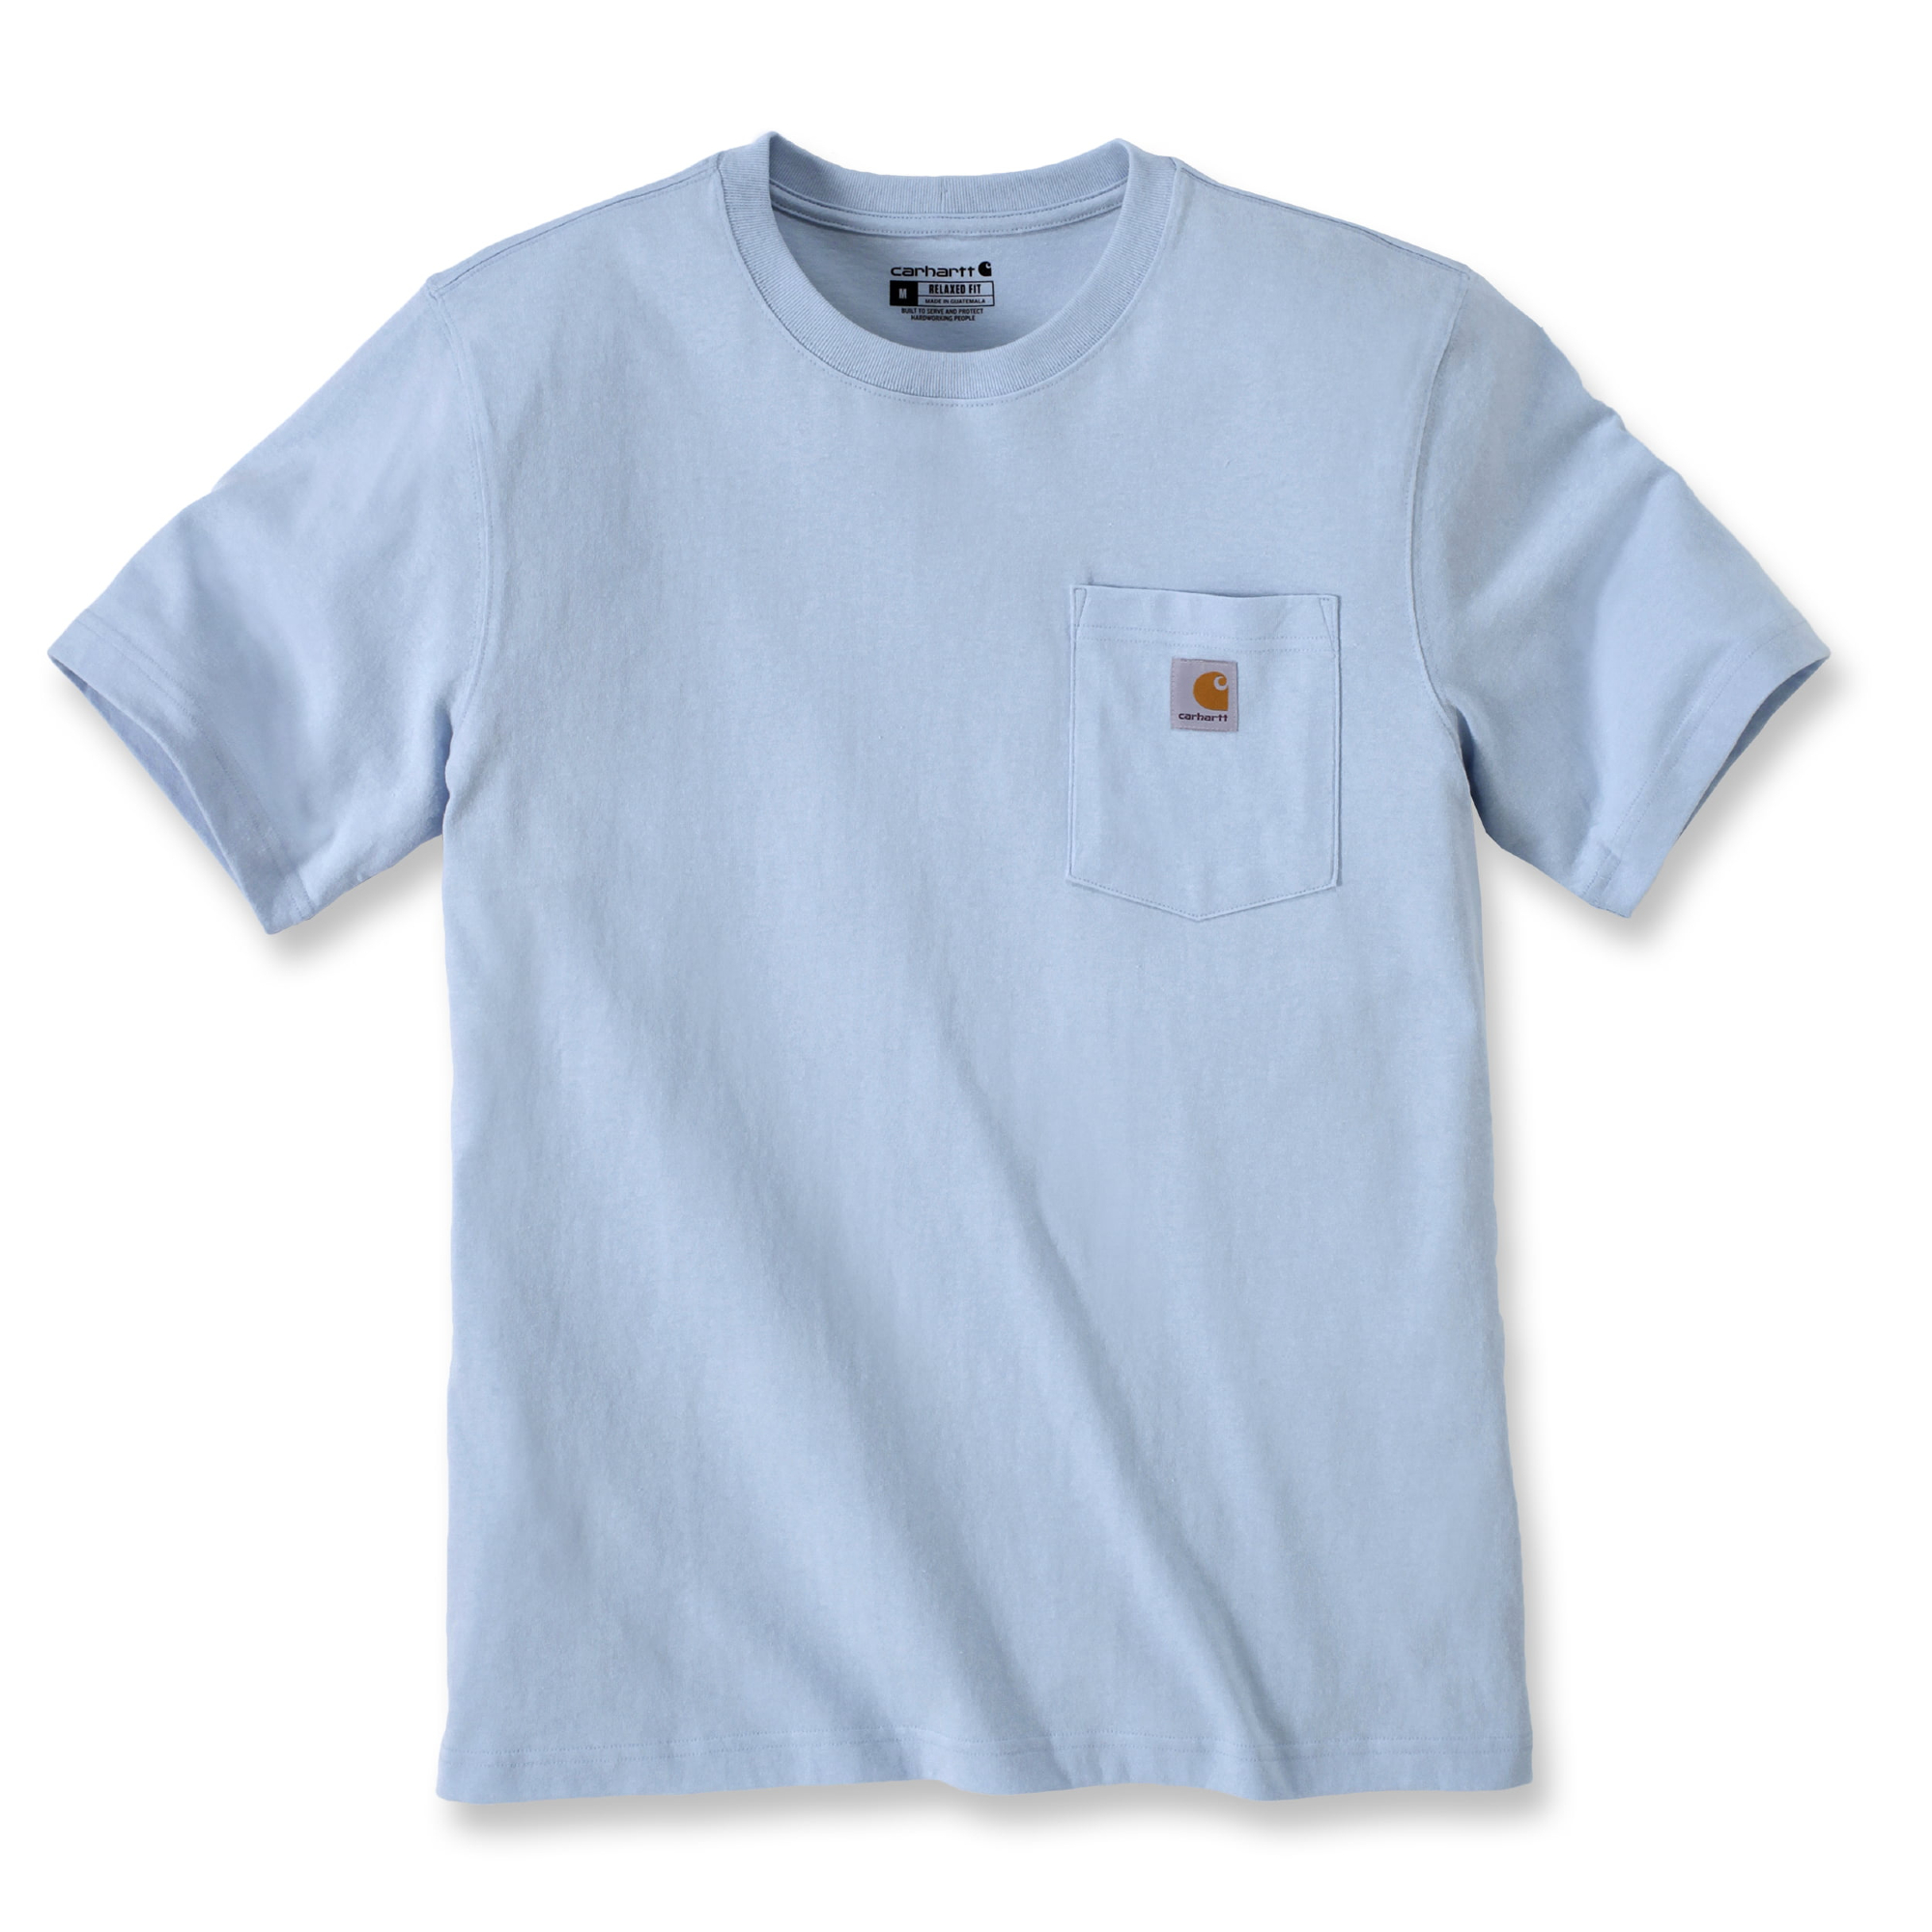 Onverslijtbaar Carhartt T-shirt in nieuwe kleuren